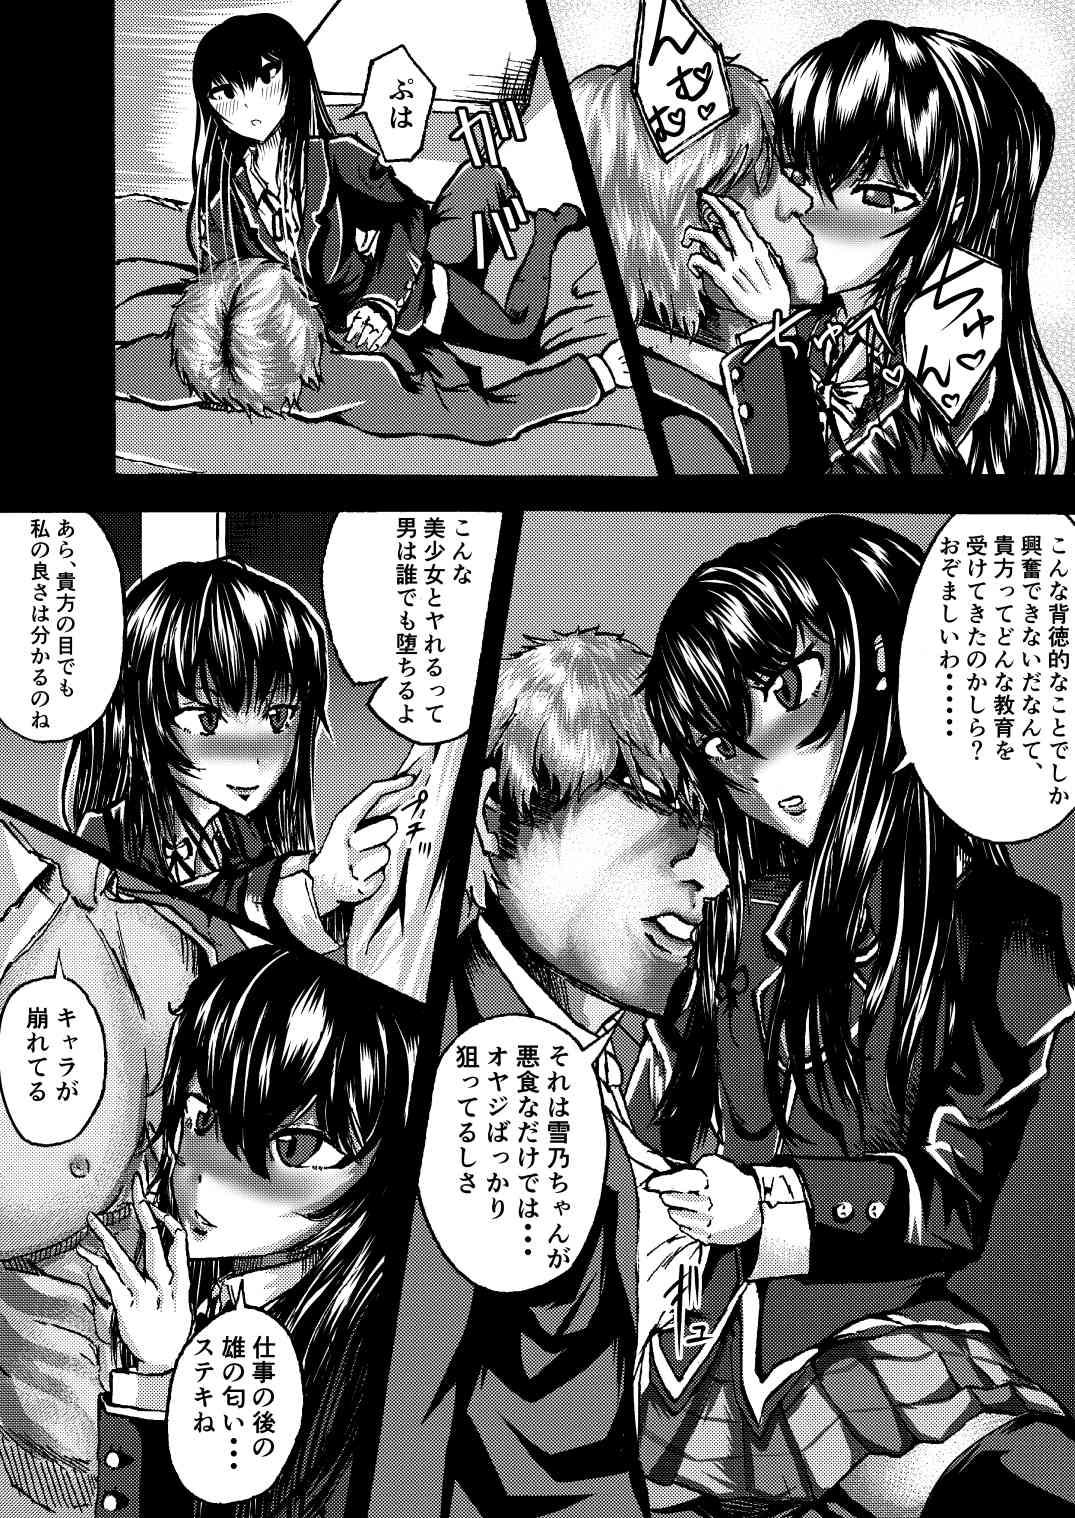 Teamskeet Yukinon to SEX Shitain daro!? - Yahari ore no seishun love come wa machigatteiru Hot Milf - Page 5